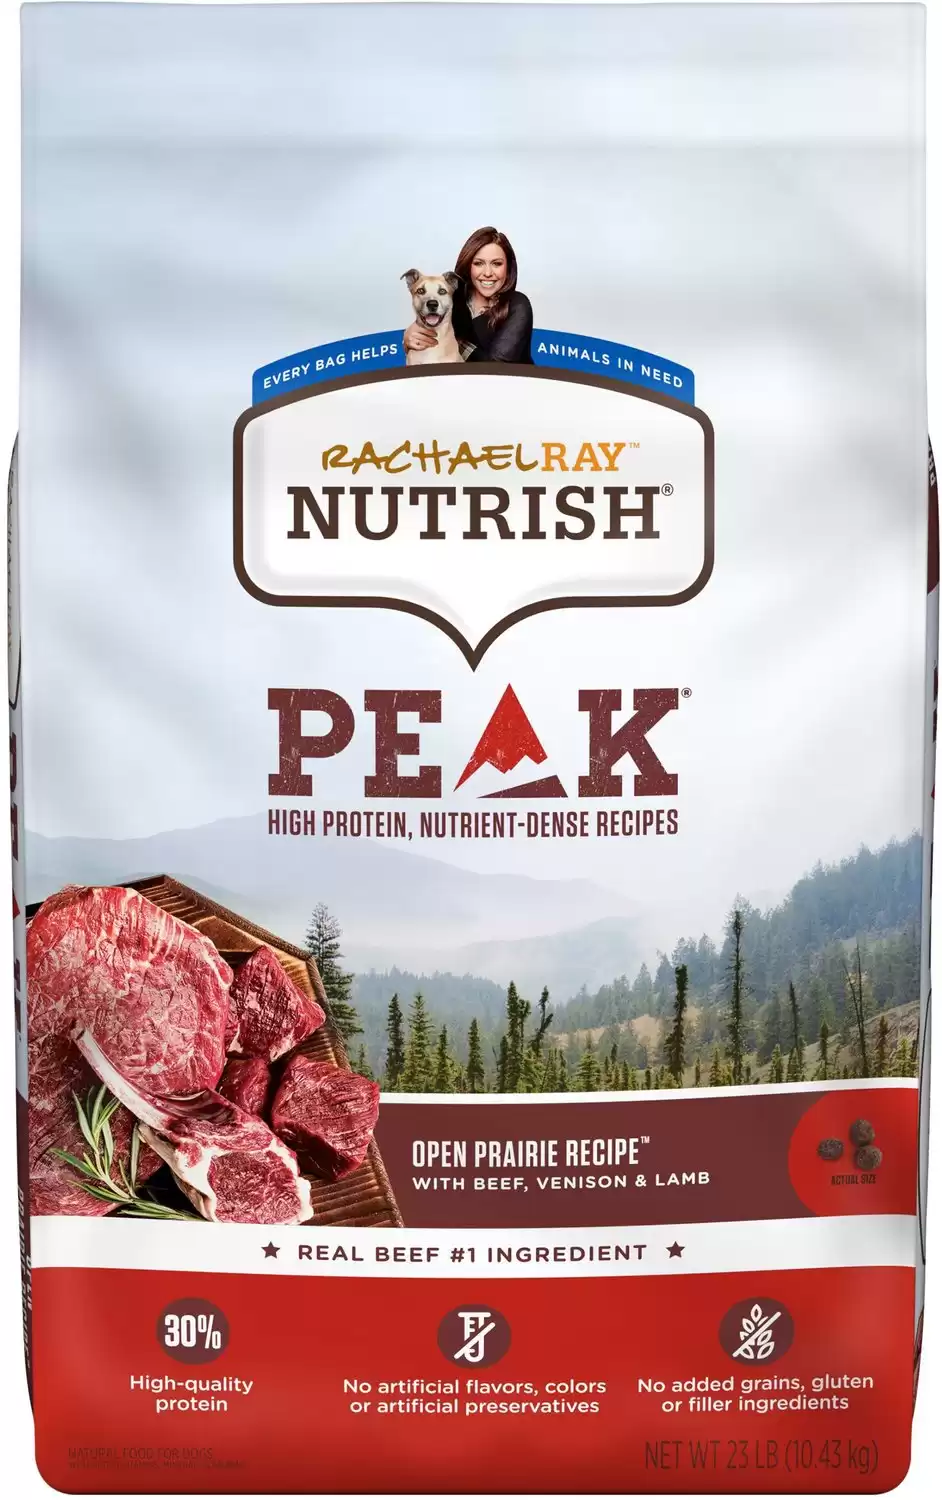 Rachael Ray Nutrish PEAK Open Prairie Ricetta con manzo, cervo e agnello Cibo secco per cani naturale senza cereali